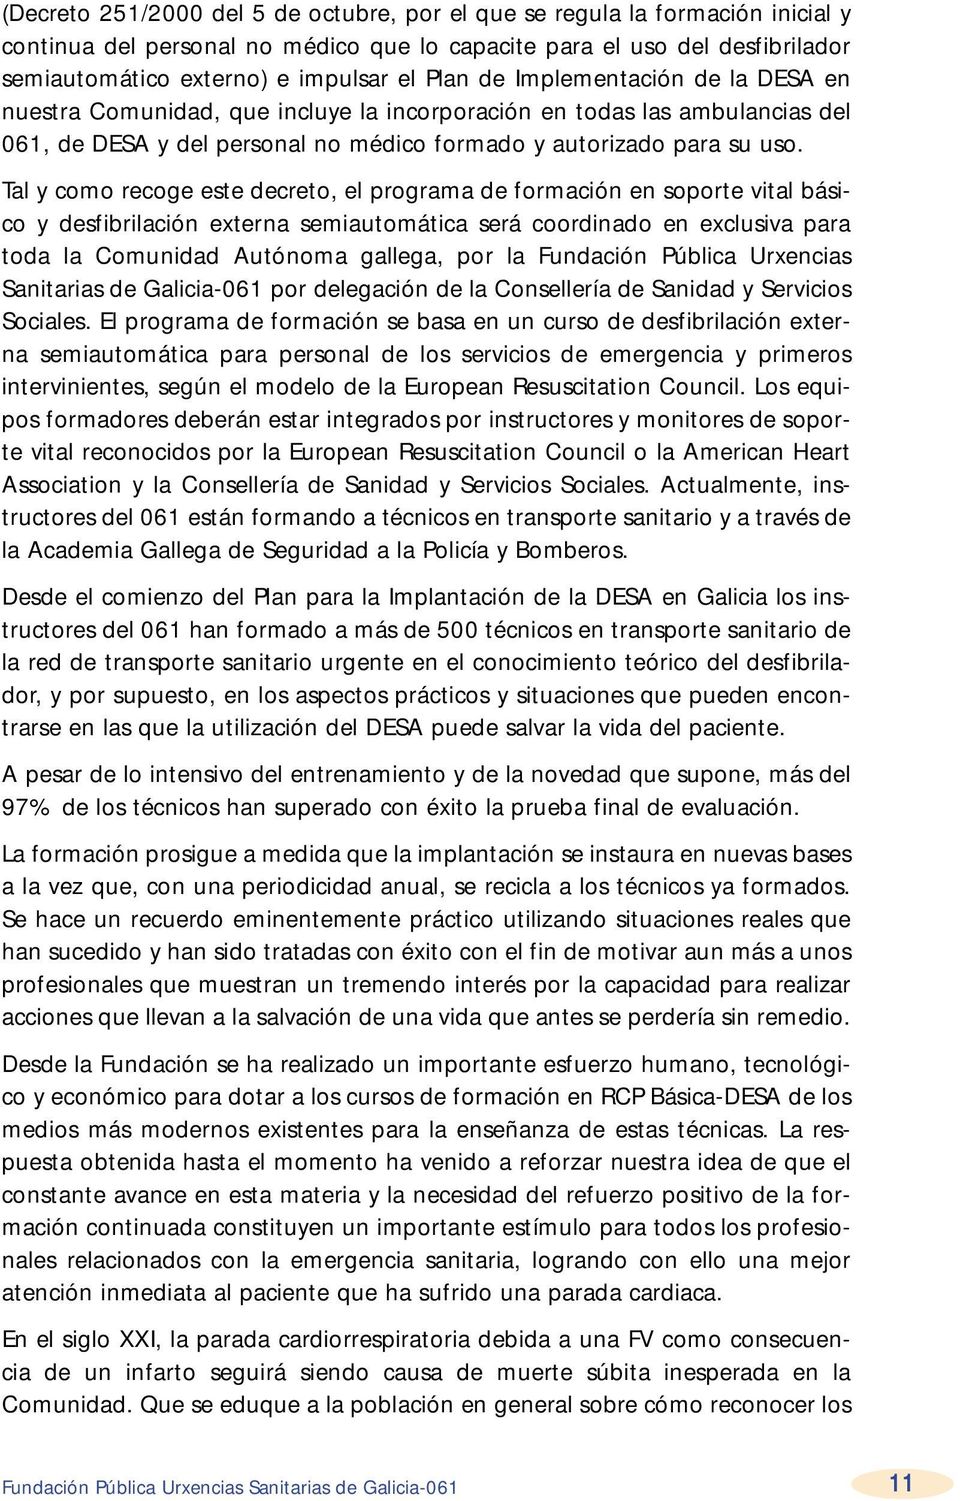 Tal y como recoge este decreto, el programa de formación en soporte vital básico y desfibrilación externa semiautomática será coordinado en exclusiva para toda la Comunidad Autónoma gallega, por la